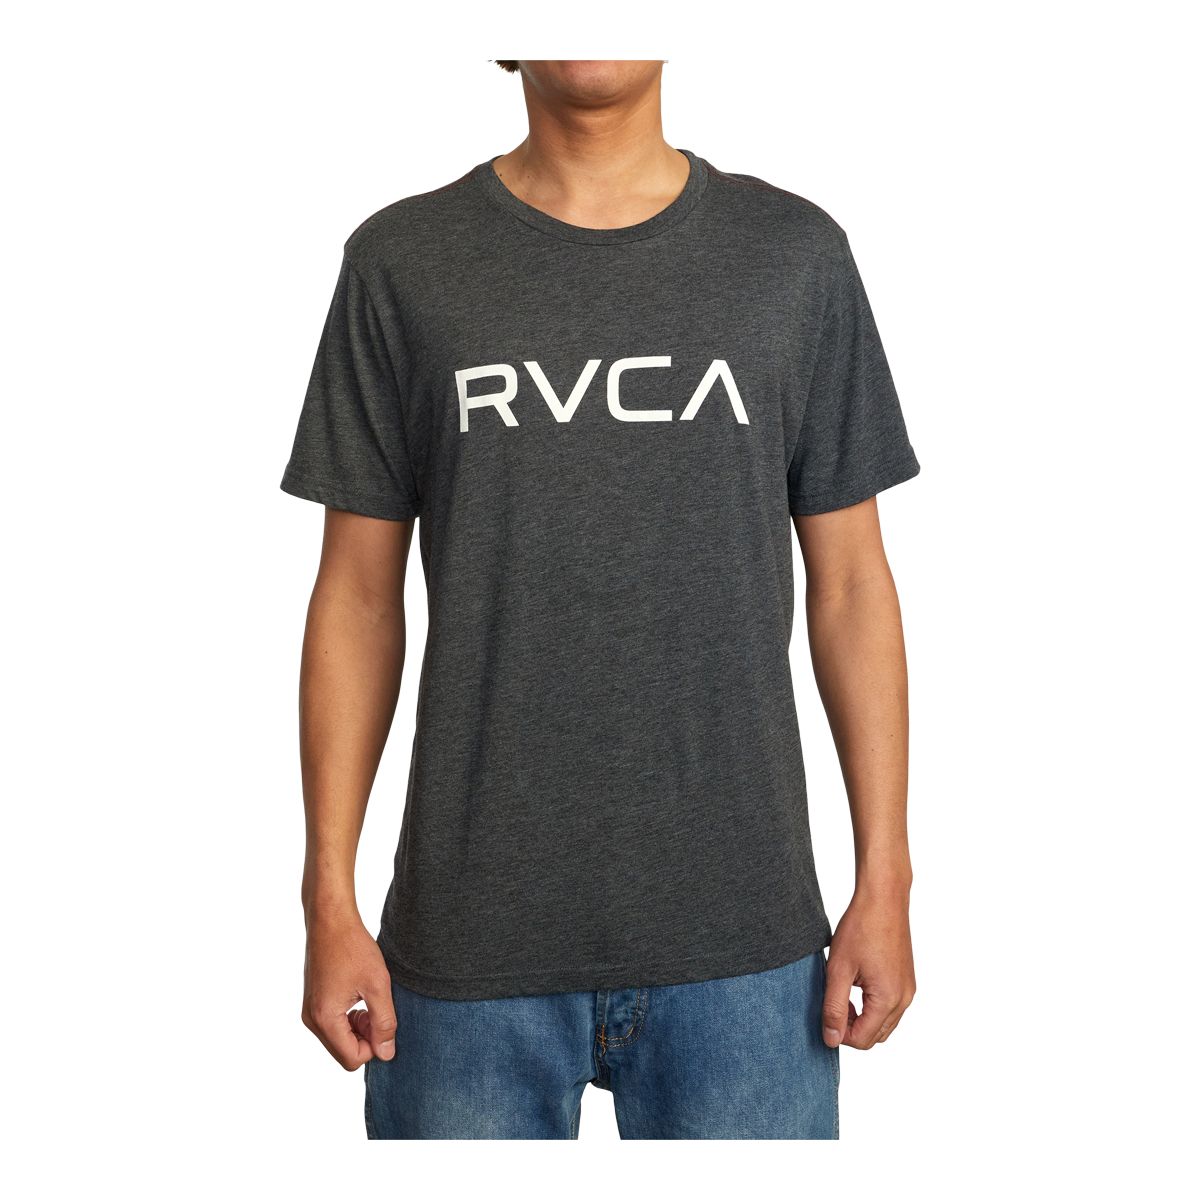 Rvca Men's Big T Shirt